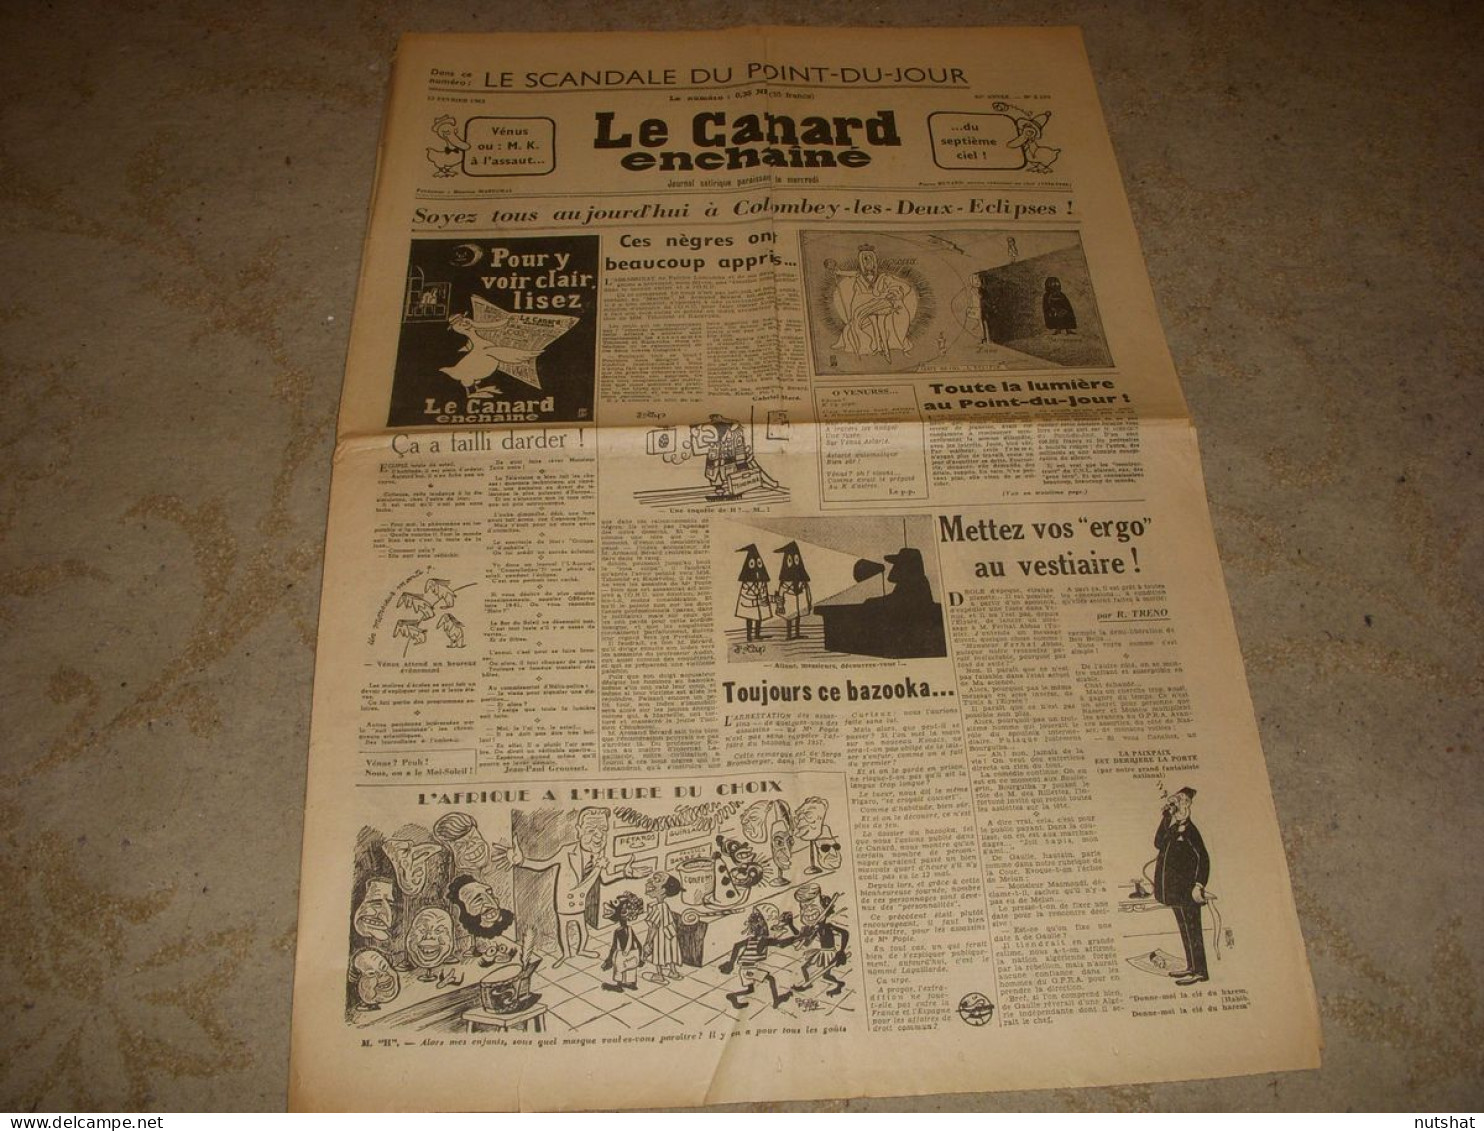 CANARD ENCHAINE 2104 15.02.1961 MARCILLAC Jean ROUSSELOT ROSES ROUGES POUR MOI - Politics